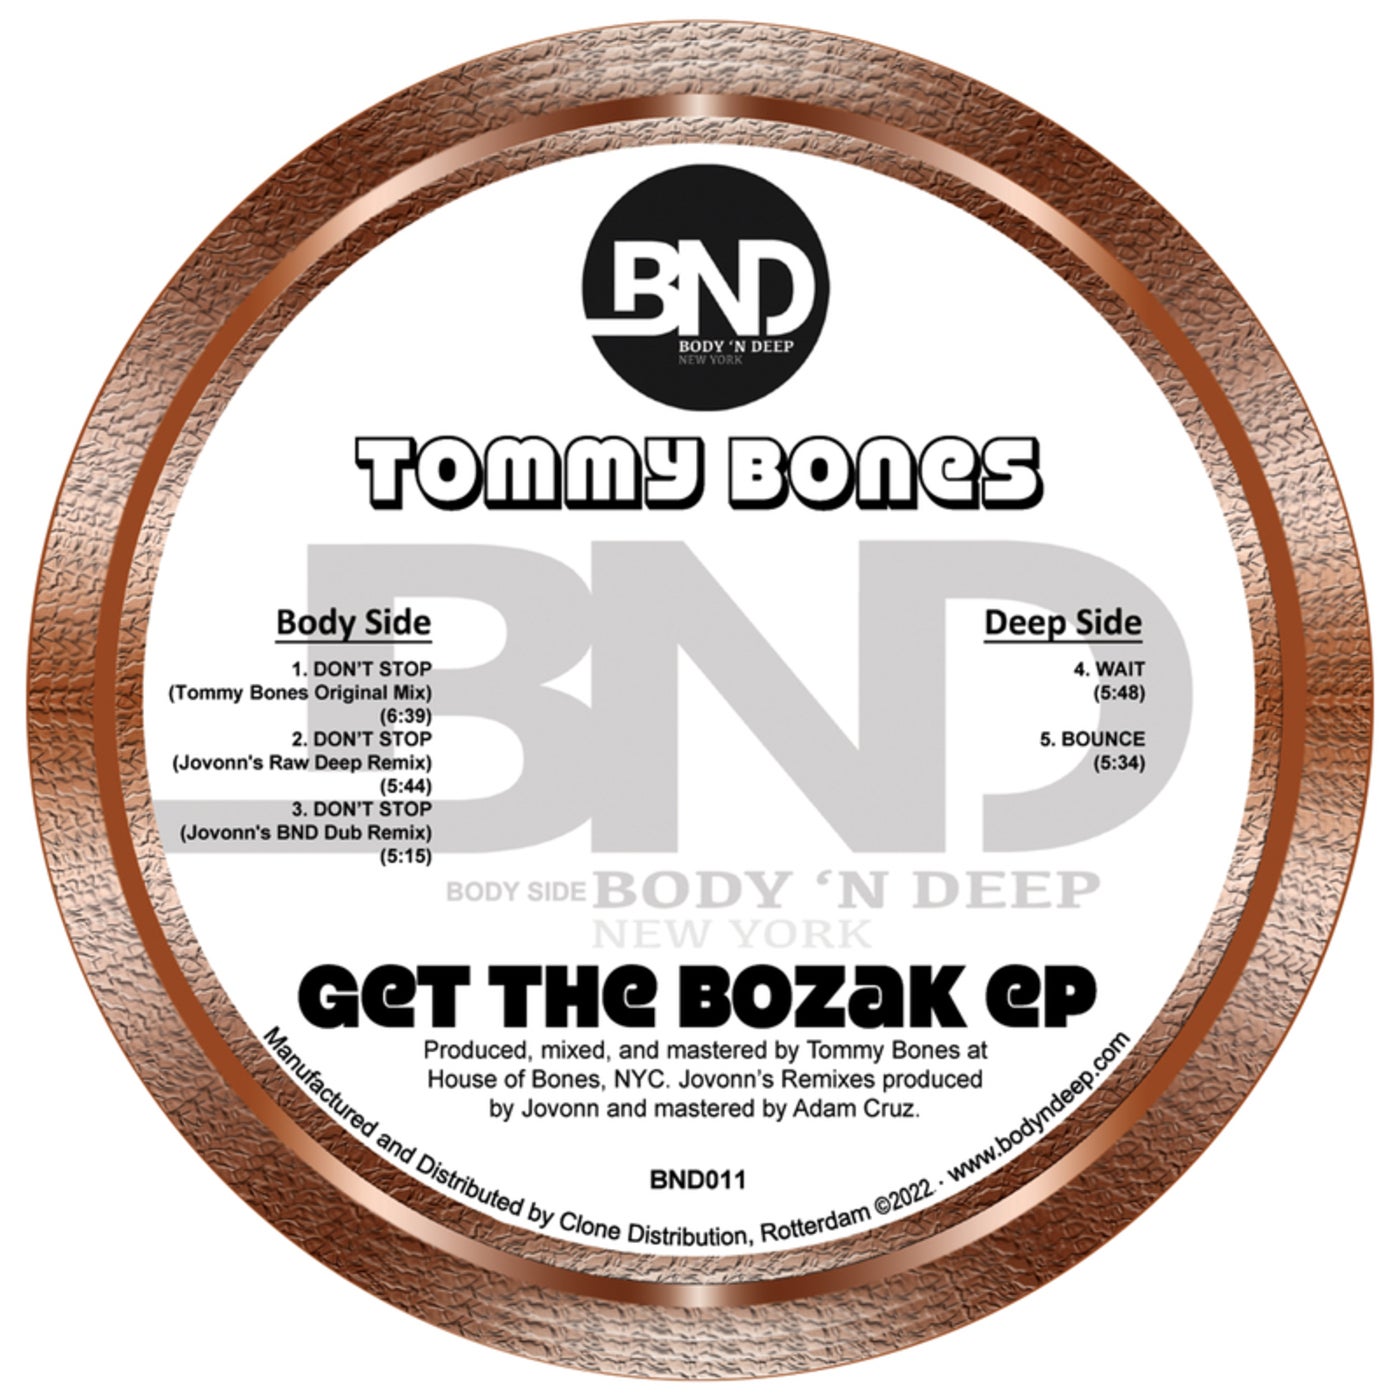 Get the Bozak EP